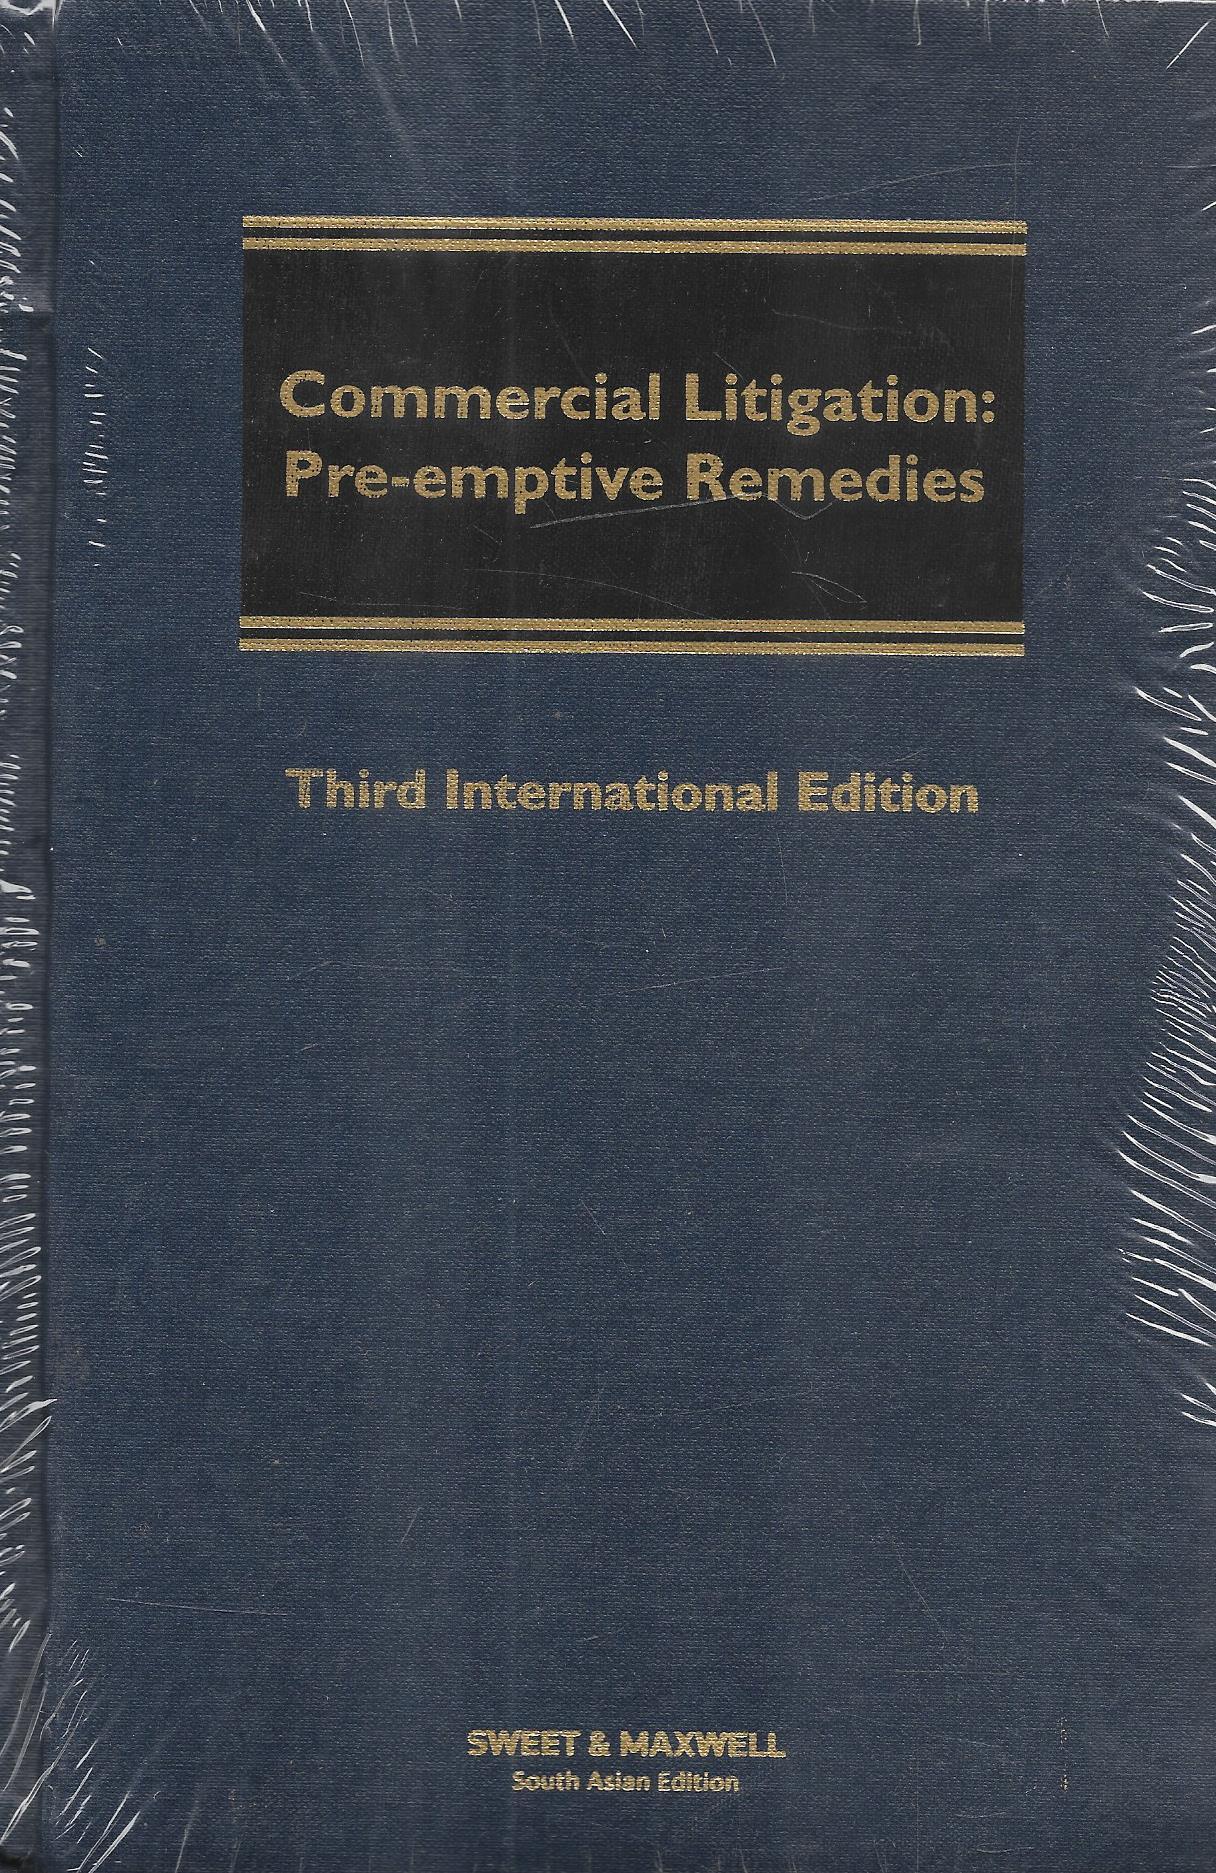 Commercial Litigation: Pre-Emptive Remedies